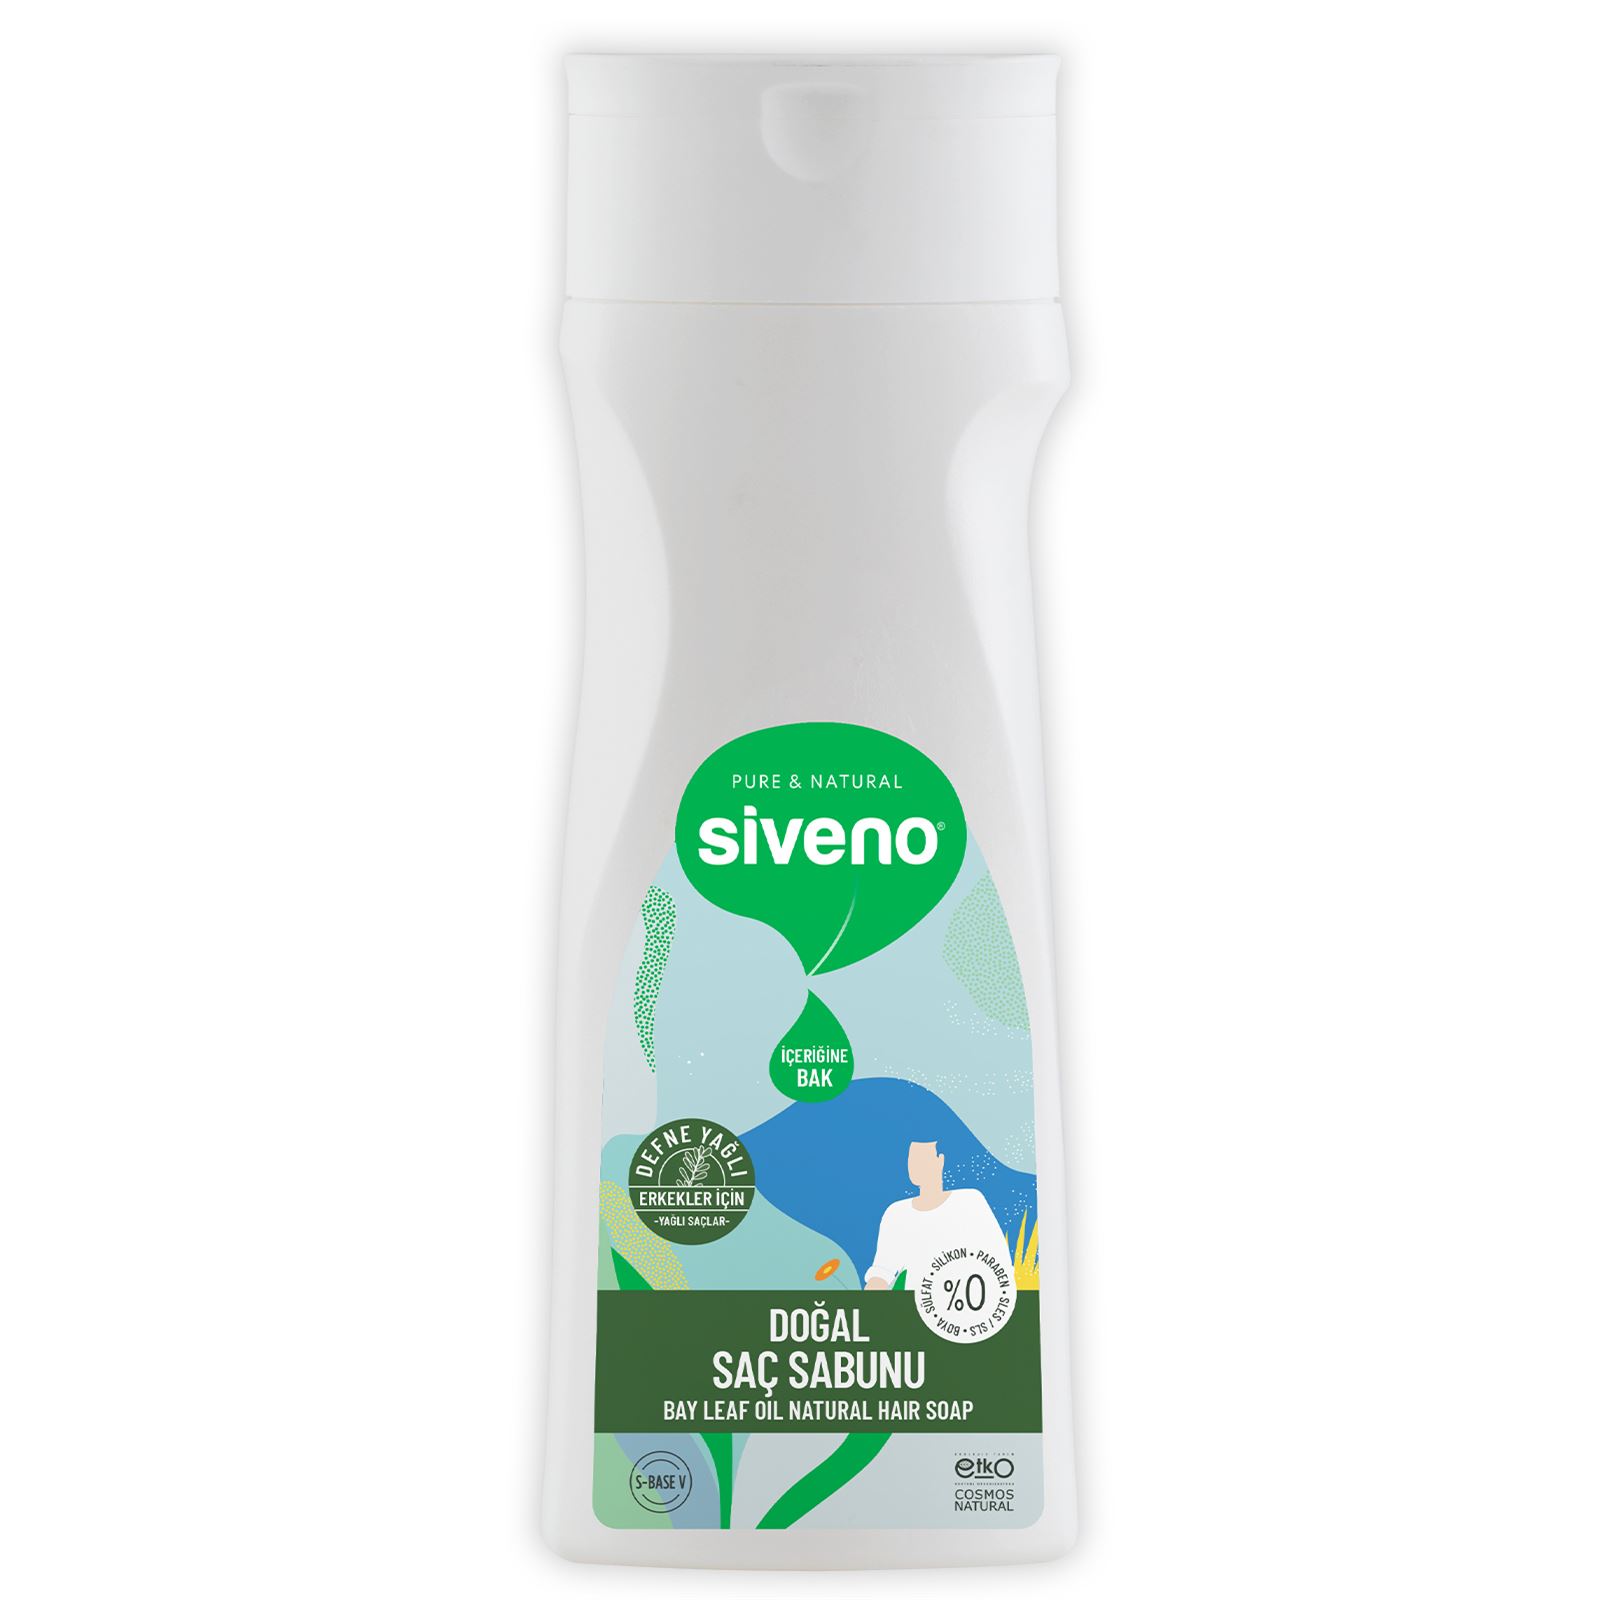 Siveno Defneyağlı Doğal Saç Sabunu 300 ml